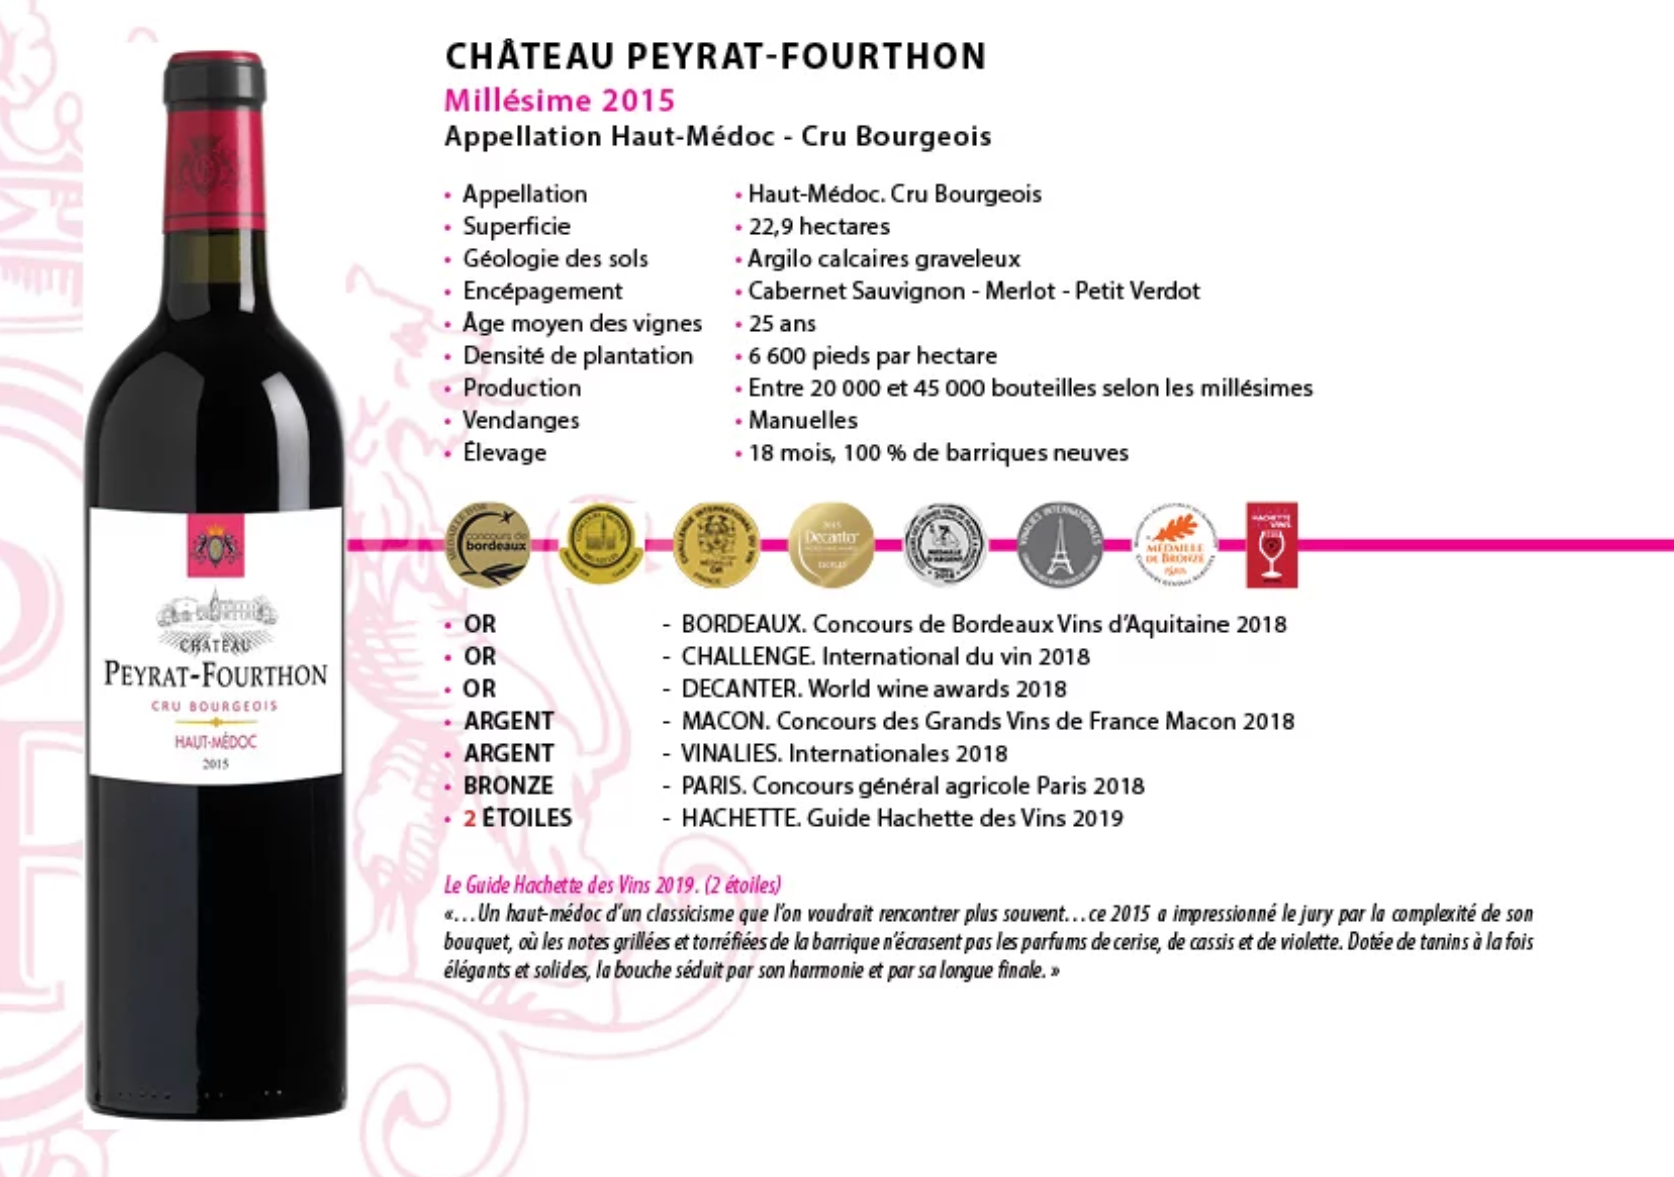 2015 Chateau Peyrat-Fourthon www.luxfood-shop.fr